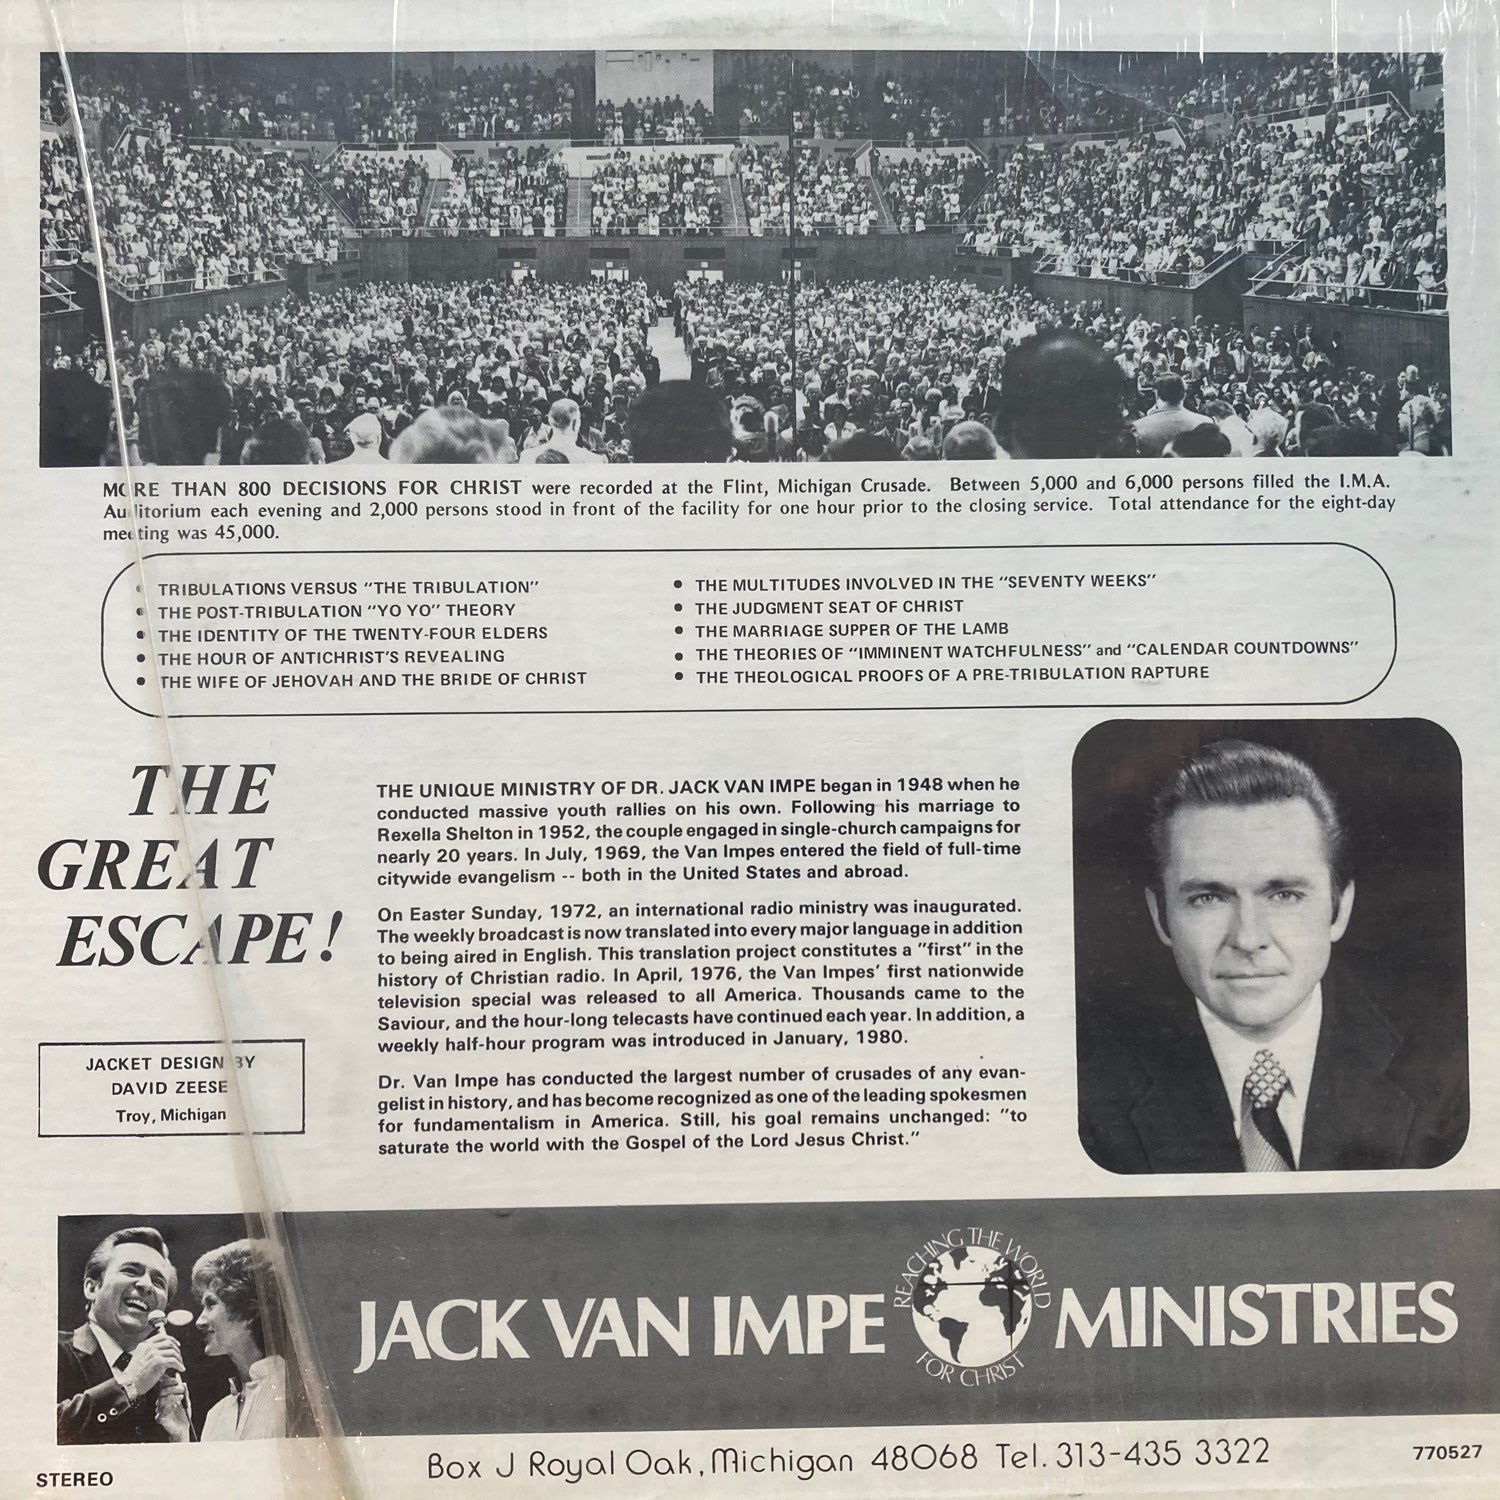 The Great Escape! - Dr. Jack Van Impe